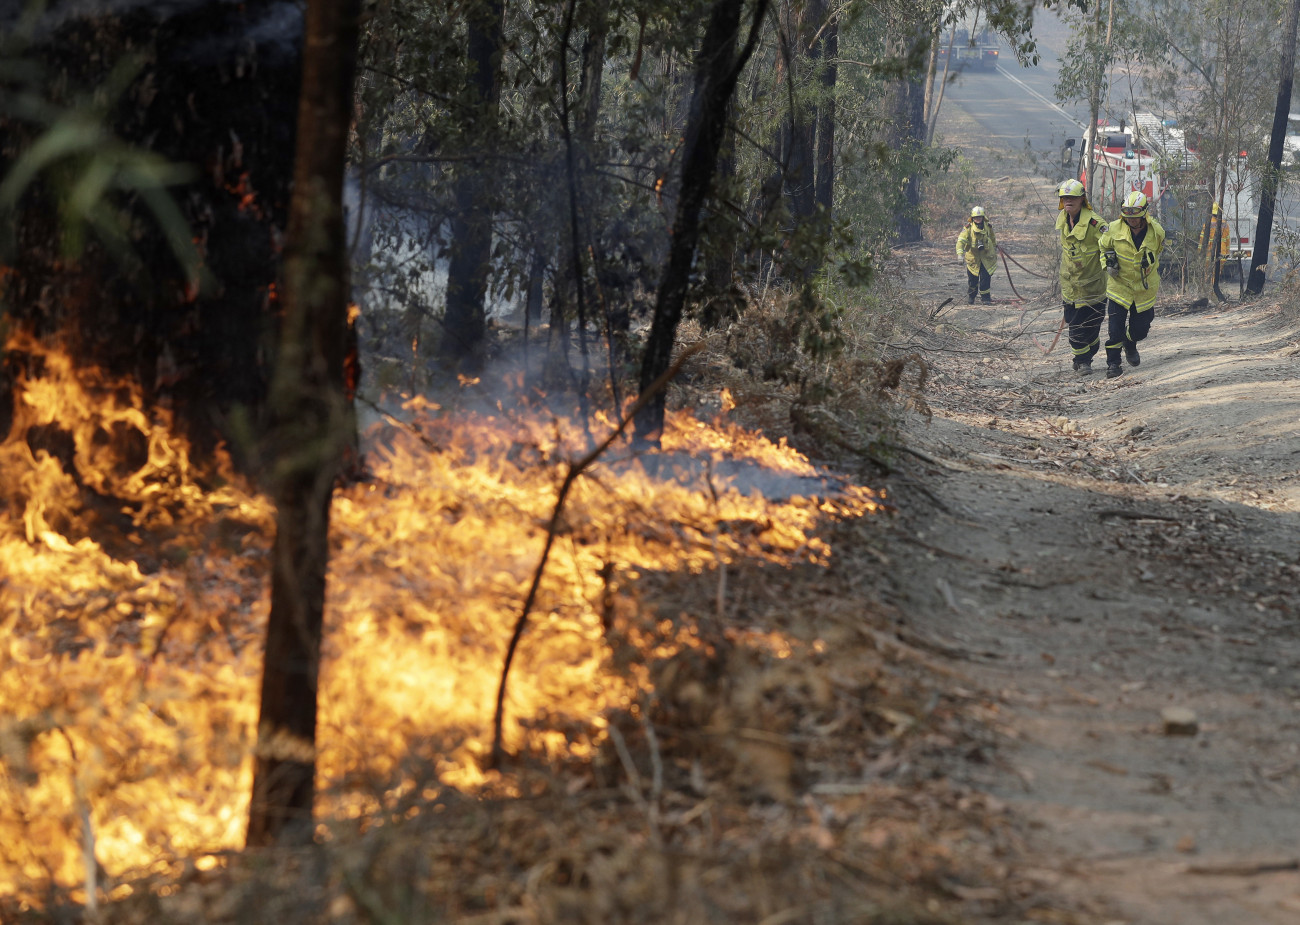 Bendalong, 2020. január 3.
Ég a növényzet az Új-Dél-Wales állambeli Bendalongban 2020. január 3-án. Az október óta tomboló bozót- és erdőtüzek miatt emberek tízezreit kell kimenteni Ausztrália délkeleti térségéből. Ausztrália-szerte 5,5 millió hektárnyi földterület égett le, 18 ember meghalt és több mint ezer ház vált a lángok martalékává.
MTI/AP/Rick Rycroft